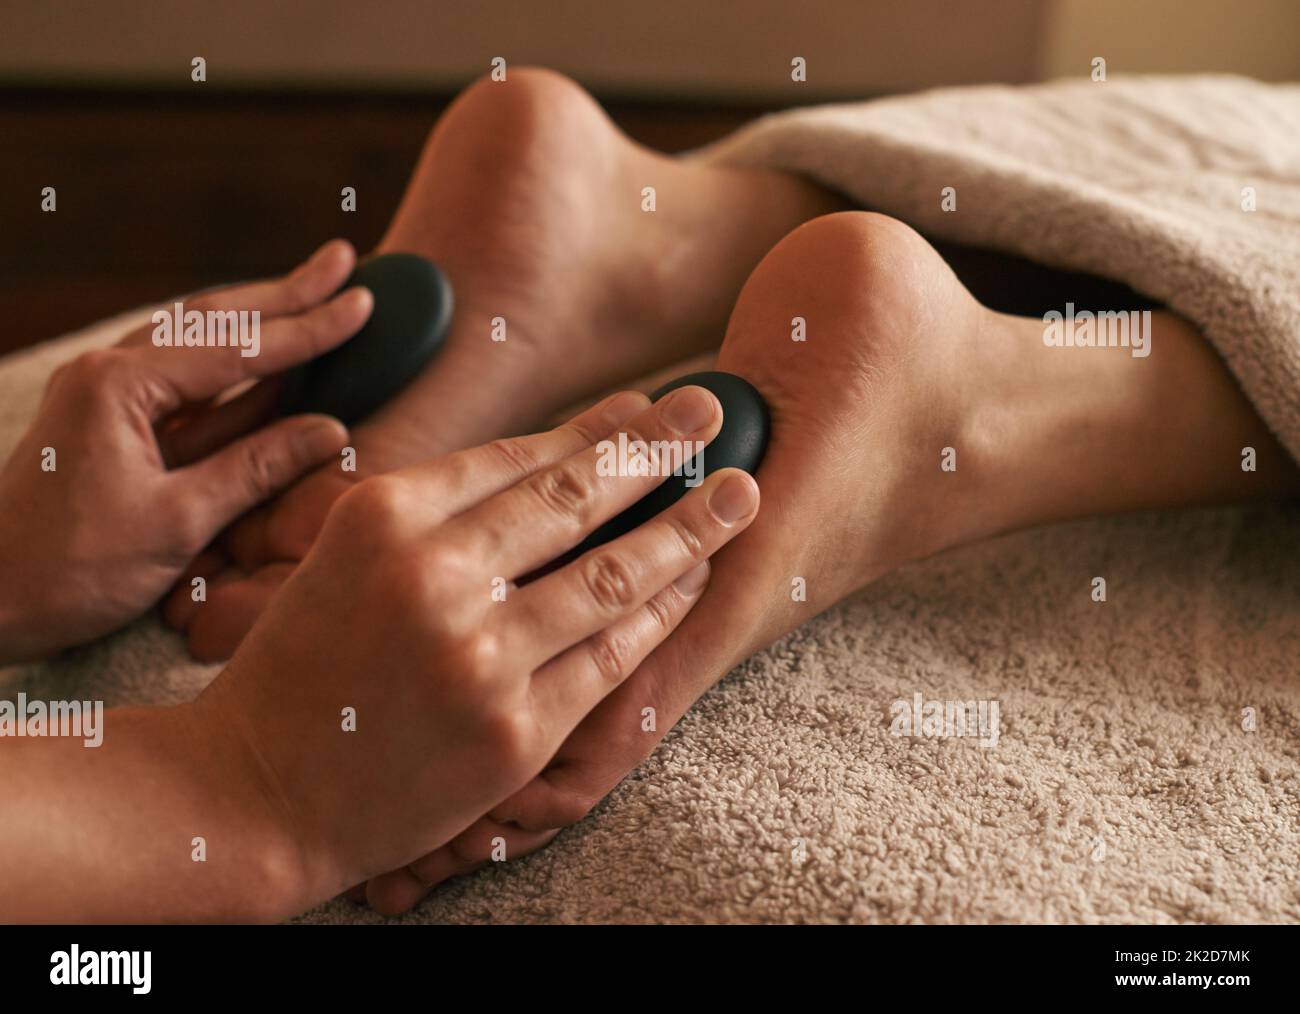 Restauro totale del corpo. Scatto corto di una donna che riceve la terapia calda della pietra sui suoi piedi. Foto Stock